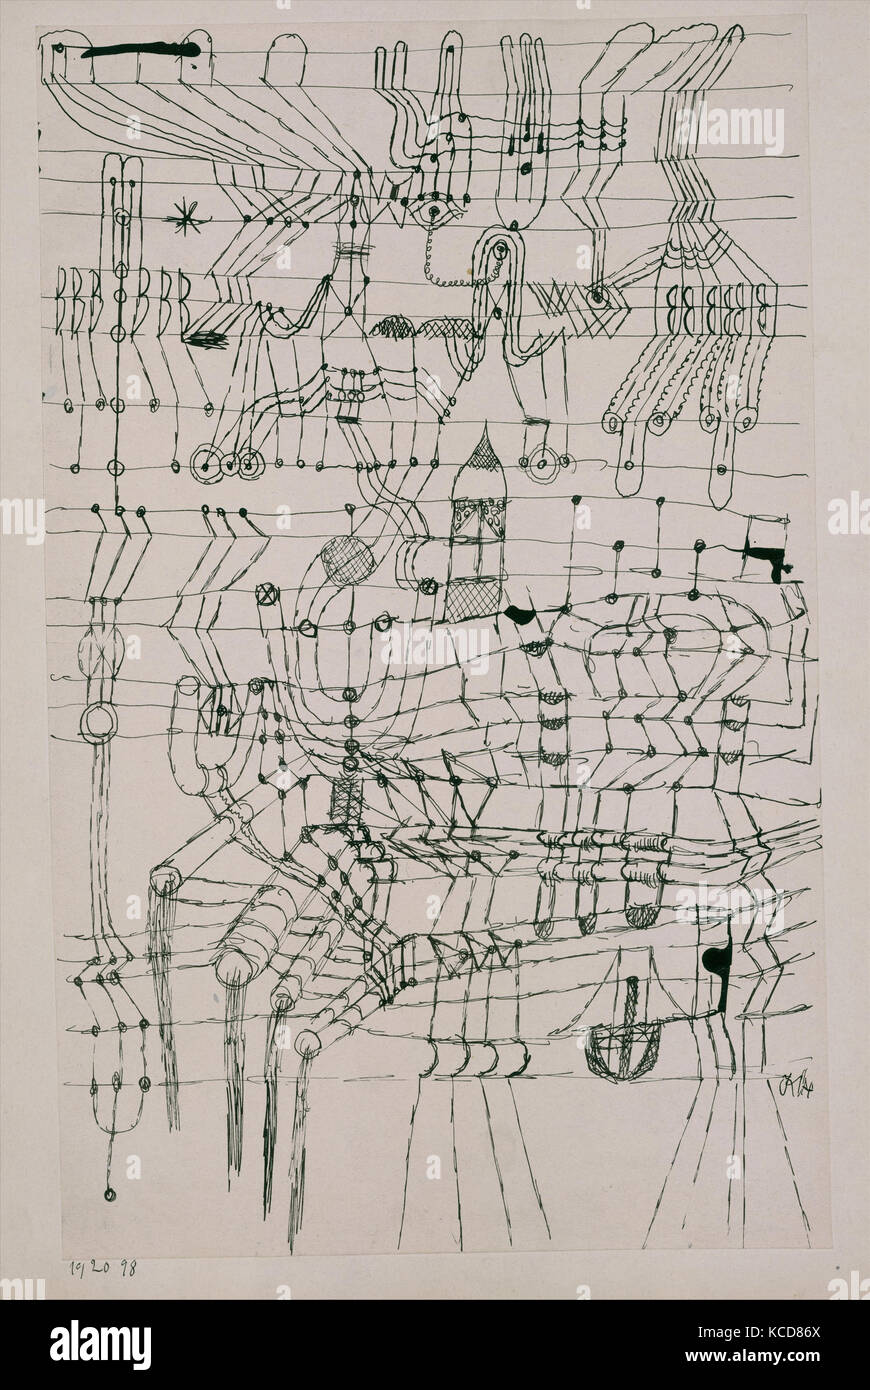 Zeichnung in der Art eines Net, Paul Klee, 1920 Verknotete Stockfoto